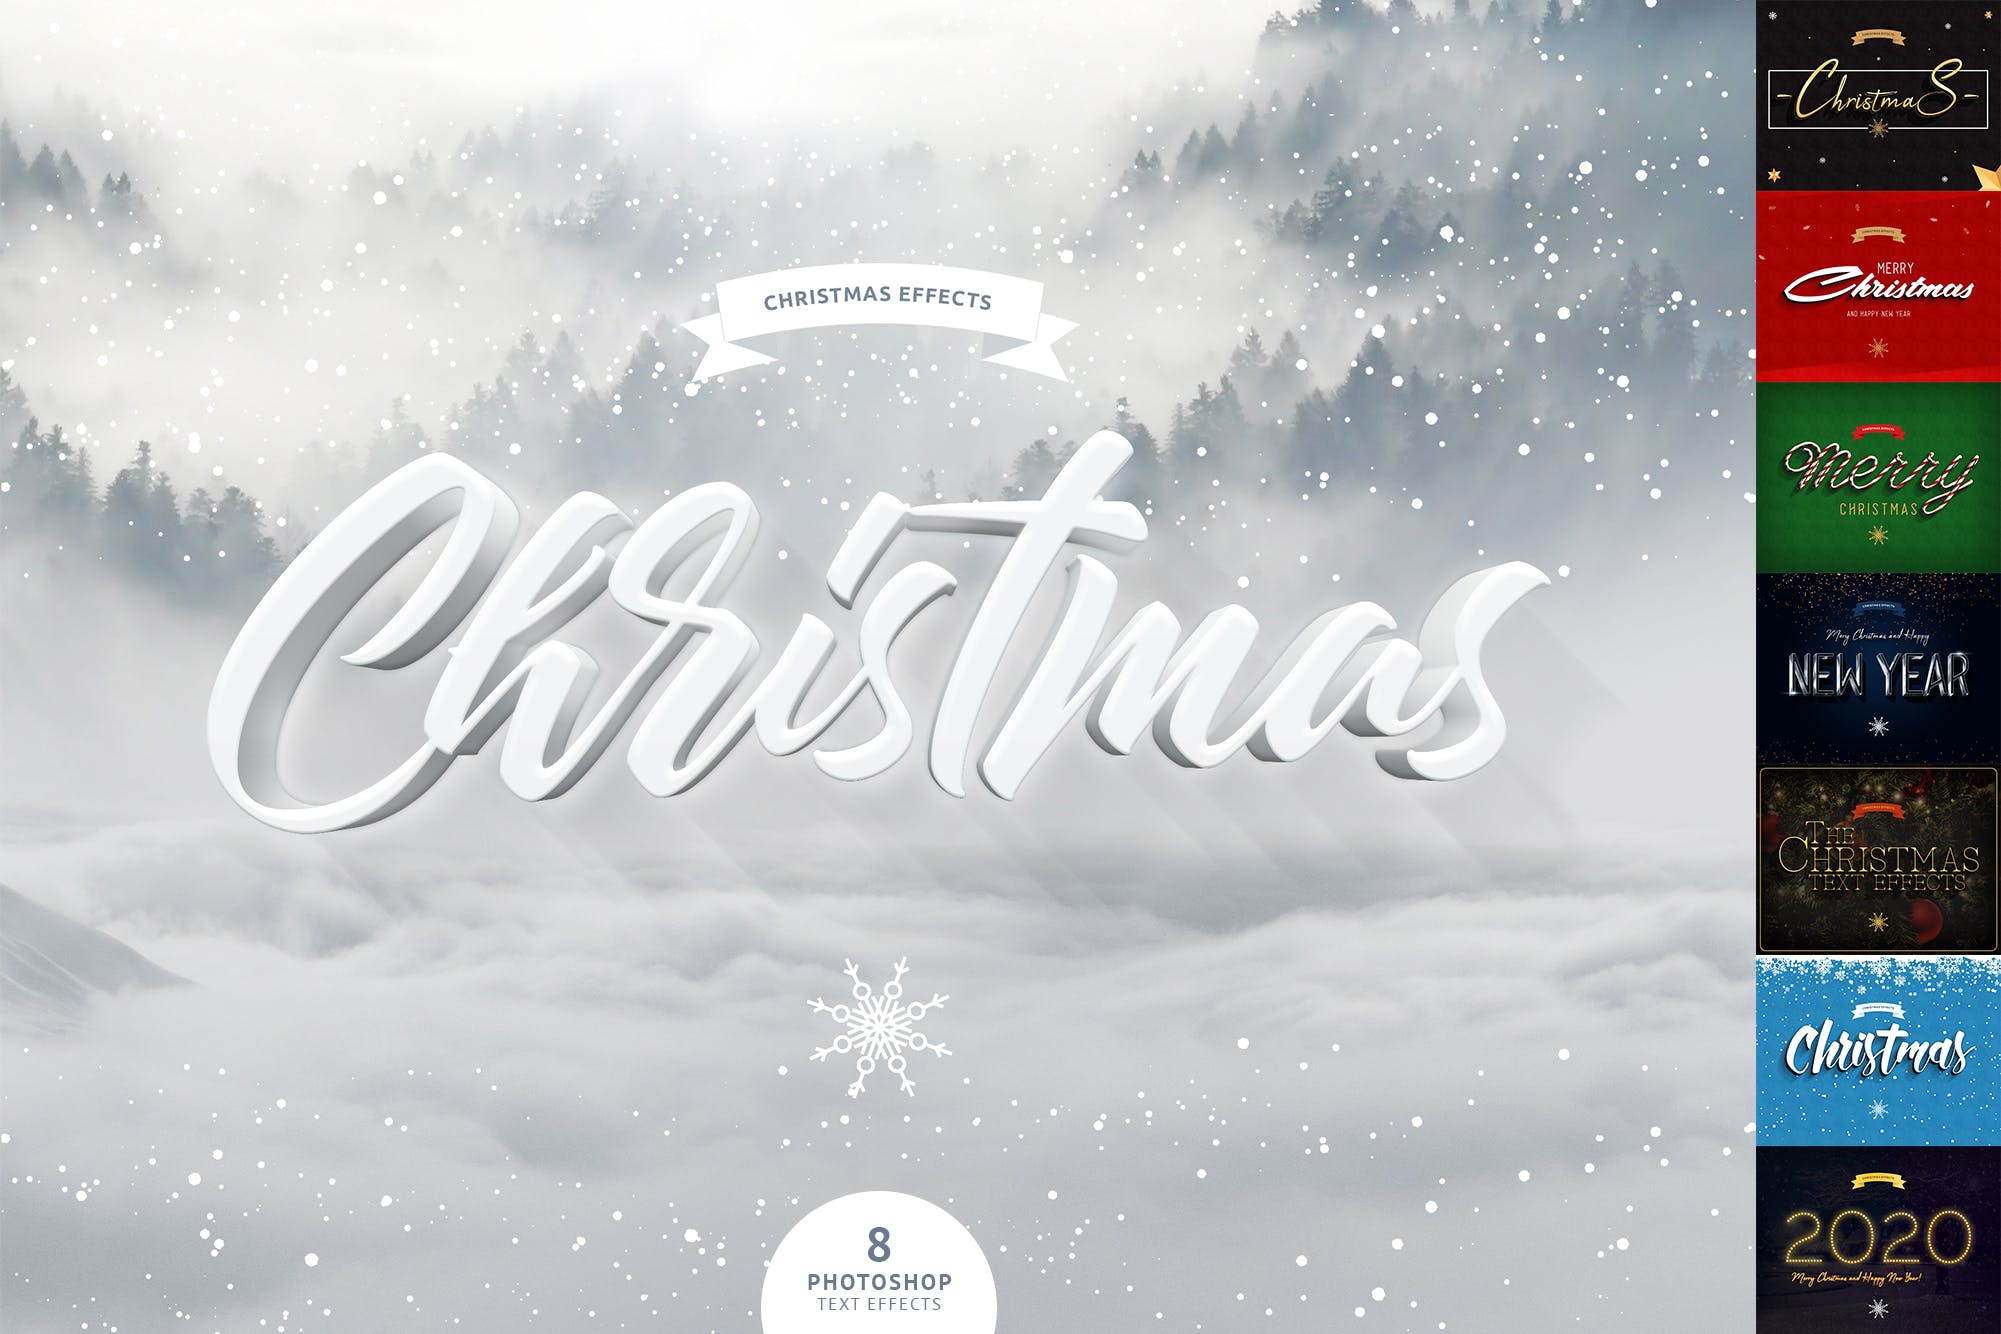 圣诞节主题海报文字样式PSD分层模板 Christmas Text Effects插图